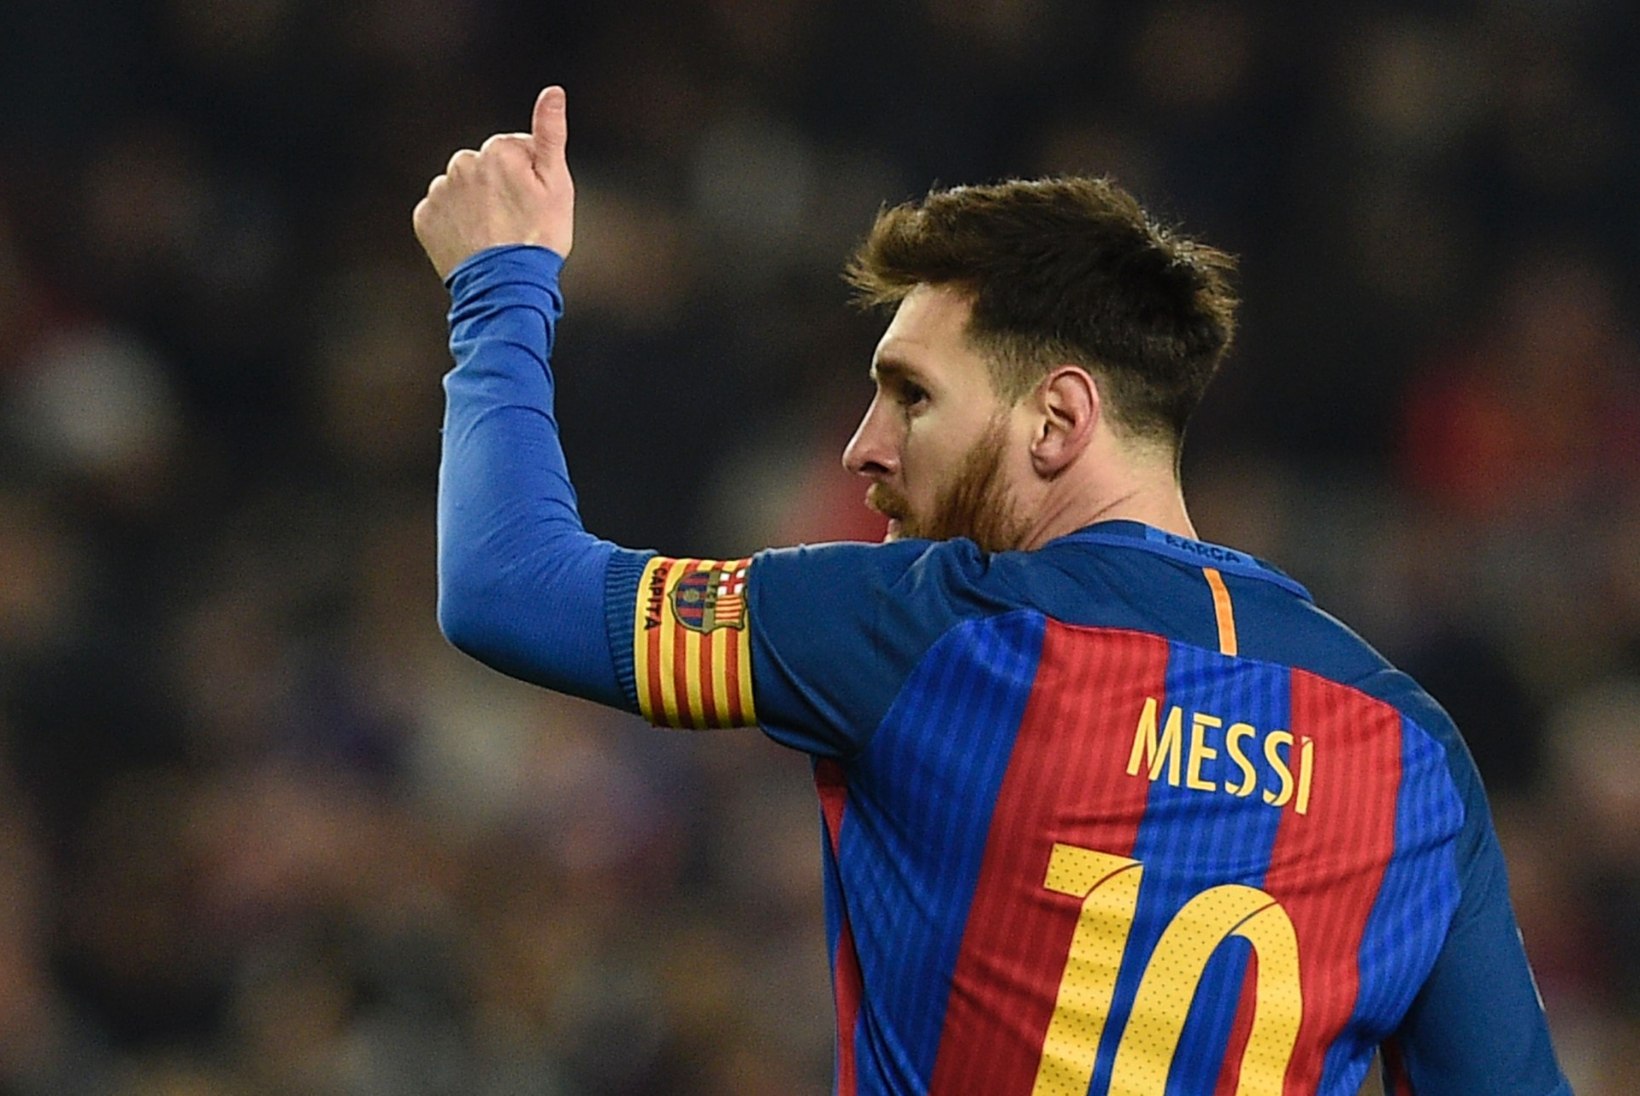 GENIAALNE! Lionel Messi leidis lärmakate naabrite vastu hiilgava abinõu